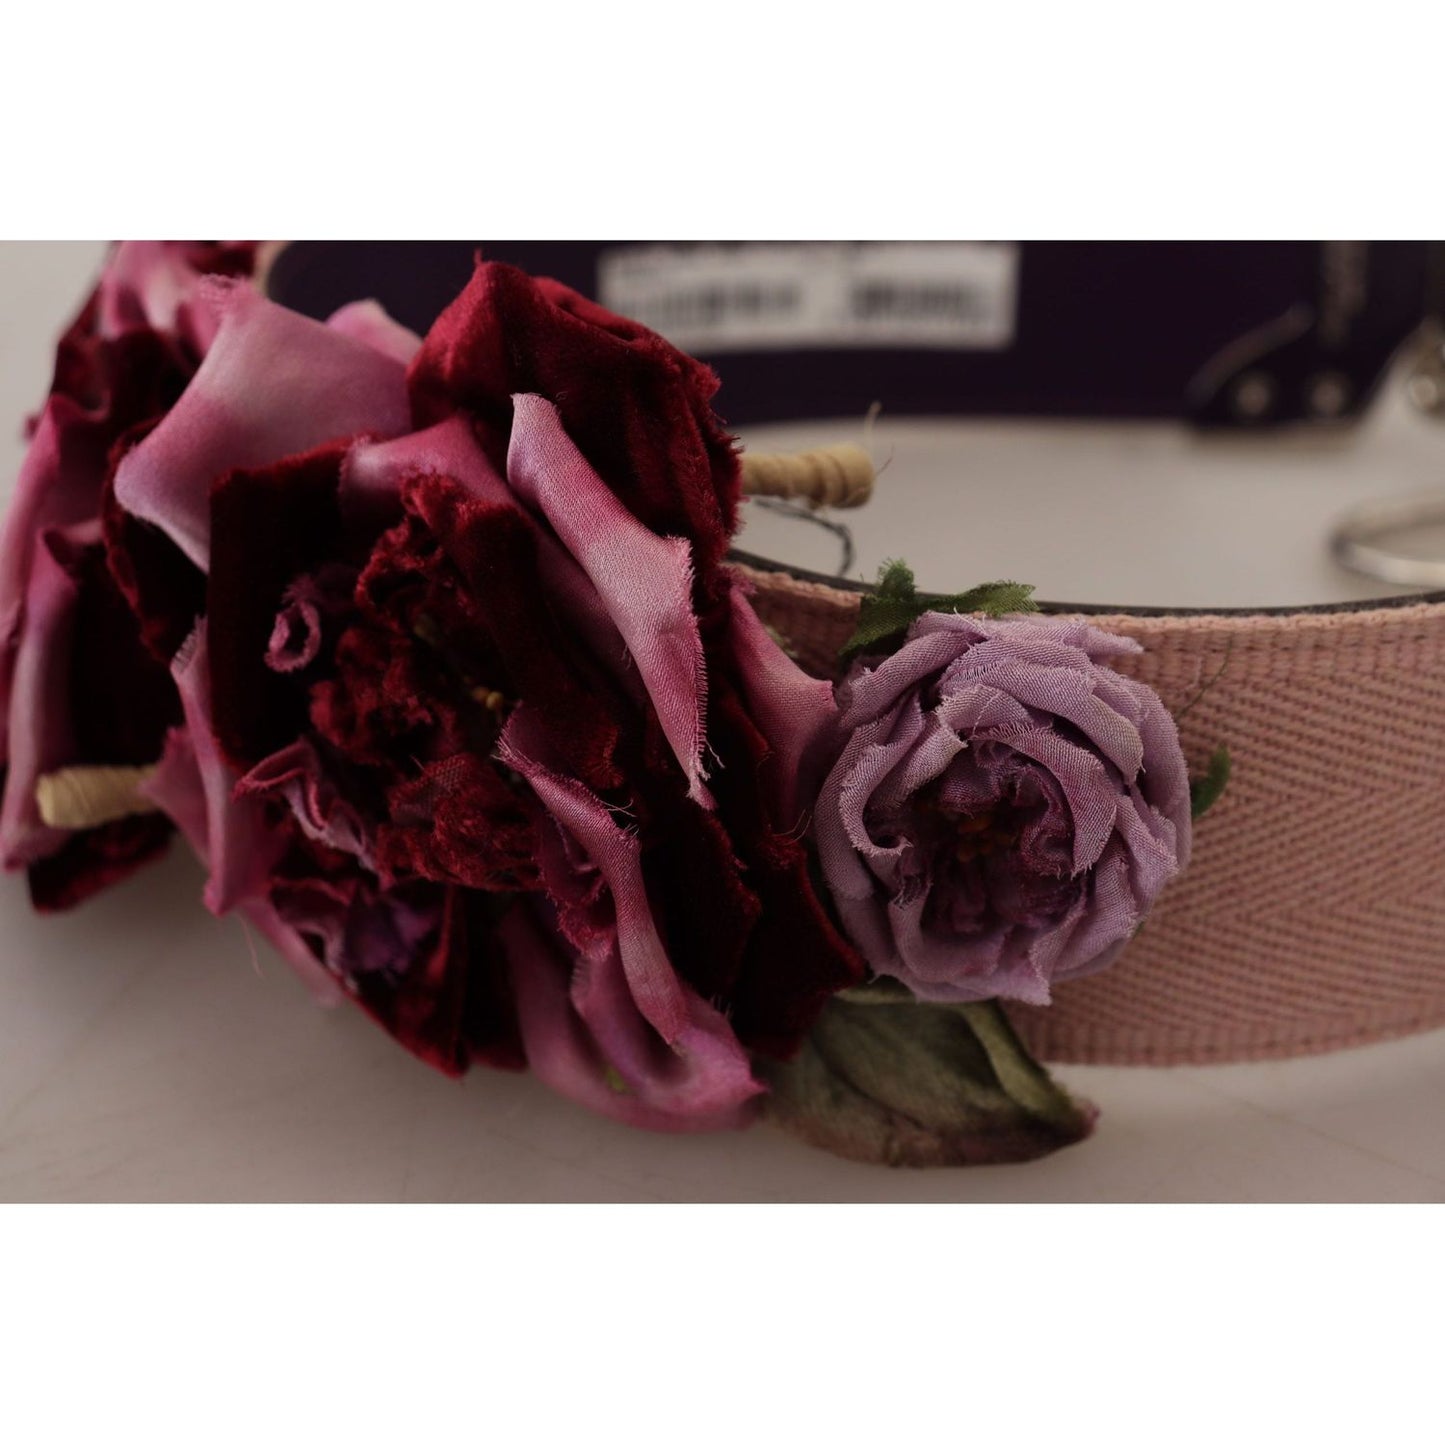 Dolce & Gabbana Beige Floral Leather Shoulder Strap Accessory multicolor-floral-appliques-metal-shoulder-strap